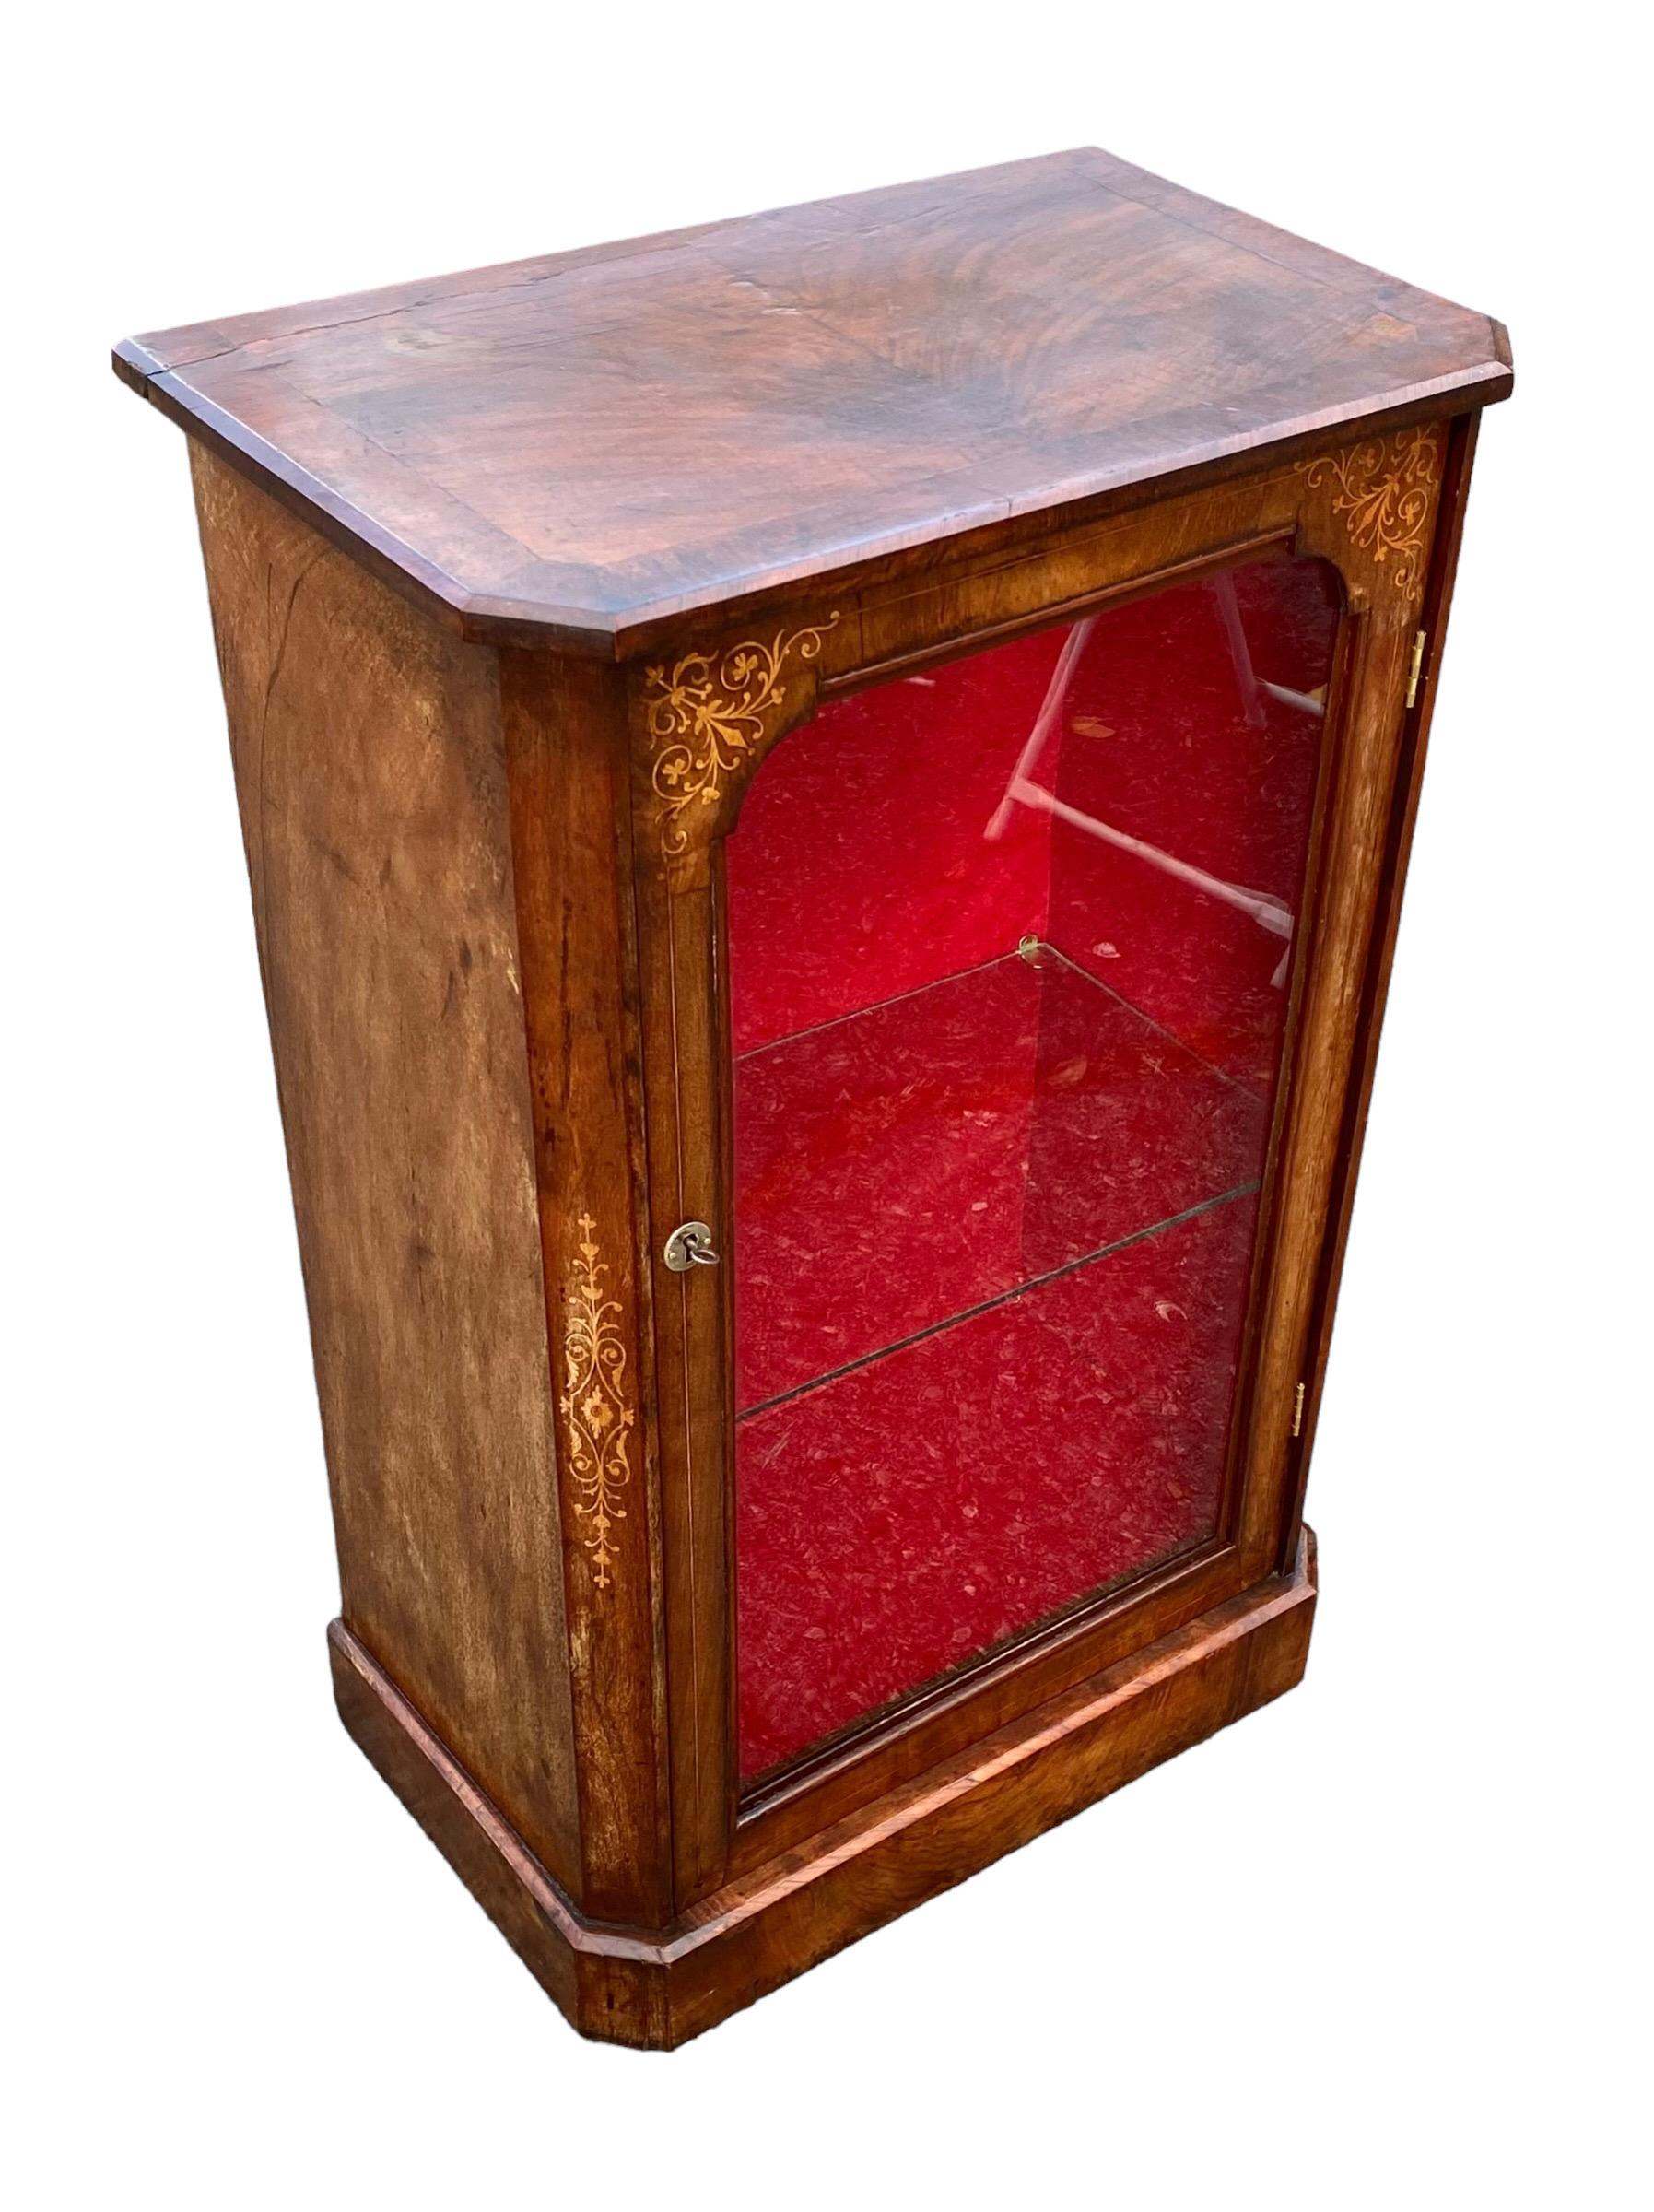 Circa 1910 antique Edwardian, marquetterie, meuble à pilier en noyer figuré. Le plateau rectangulaire en noyer figuré, aux bords moulurés, est surmonté d'une frise en marqueterie de bois exotiques. La porte vitrée, ornée d'une marqueterie complexe